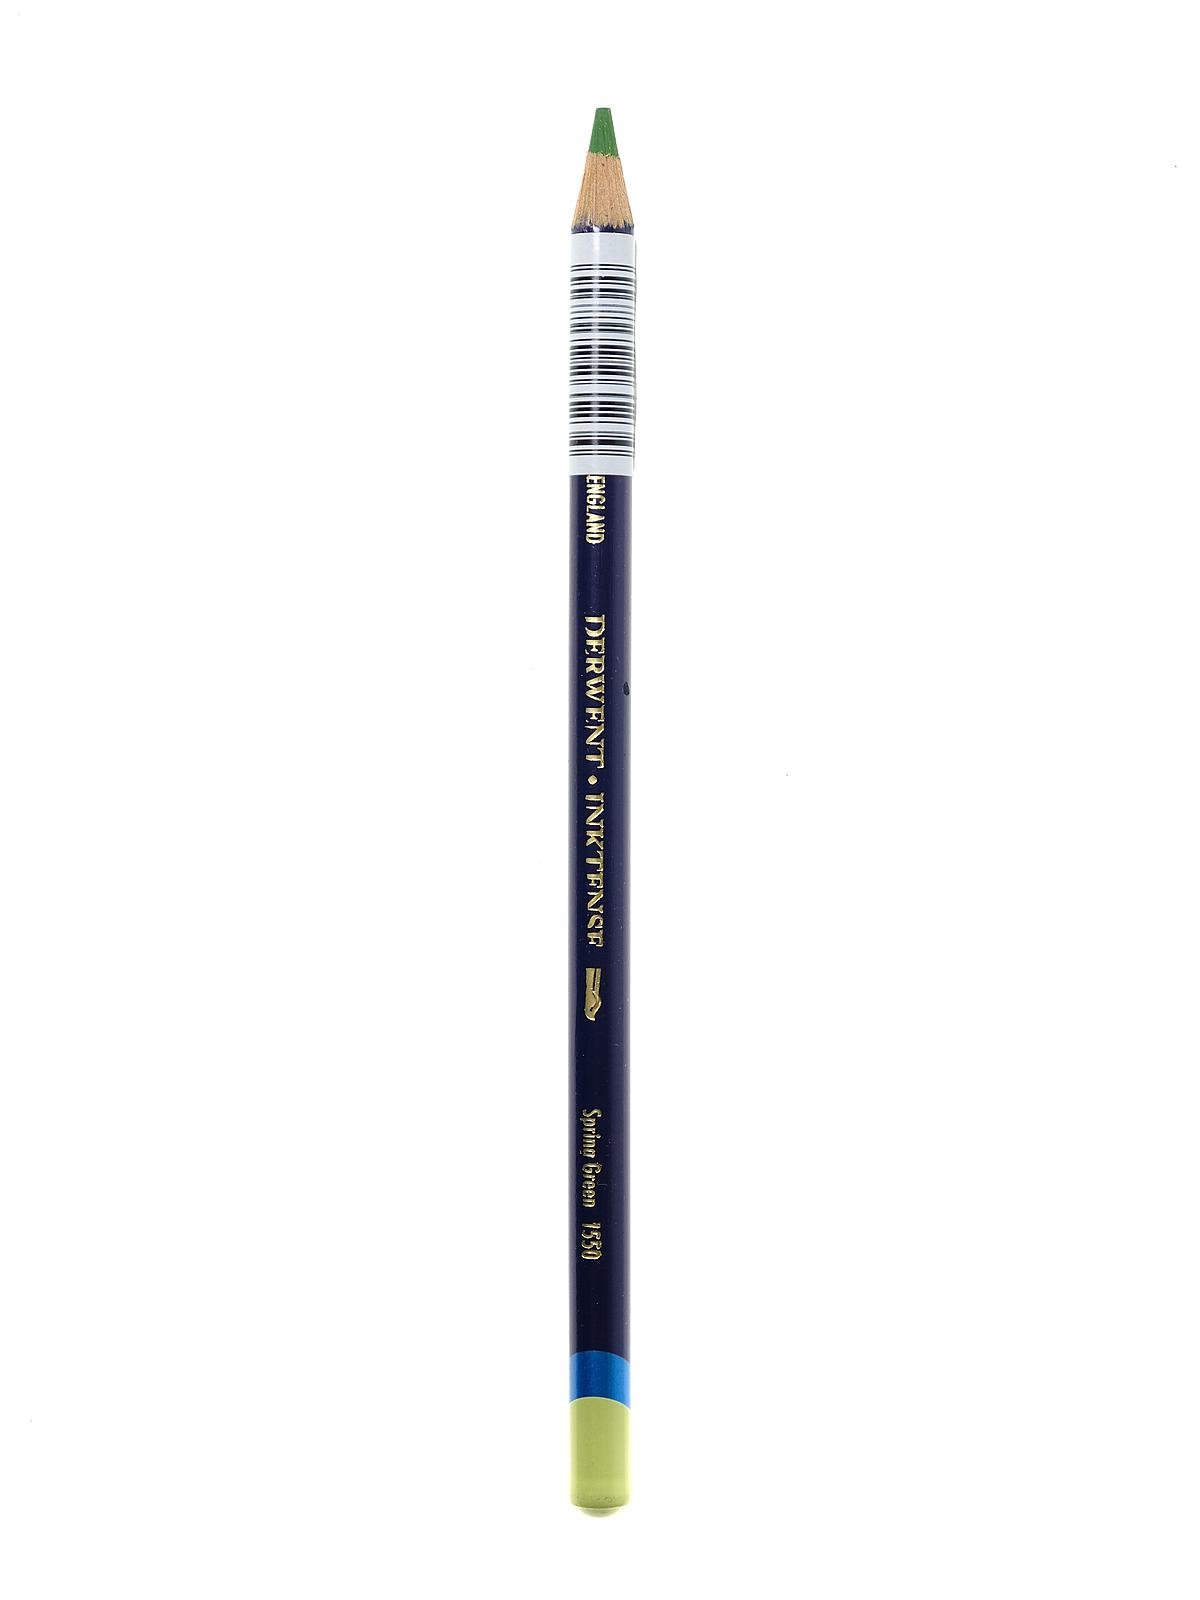 Derwent Inktense Pencils 